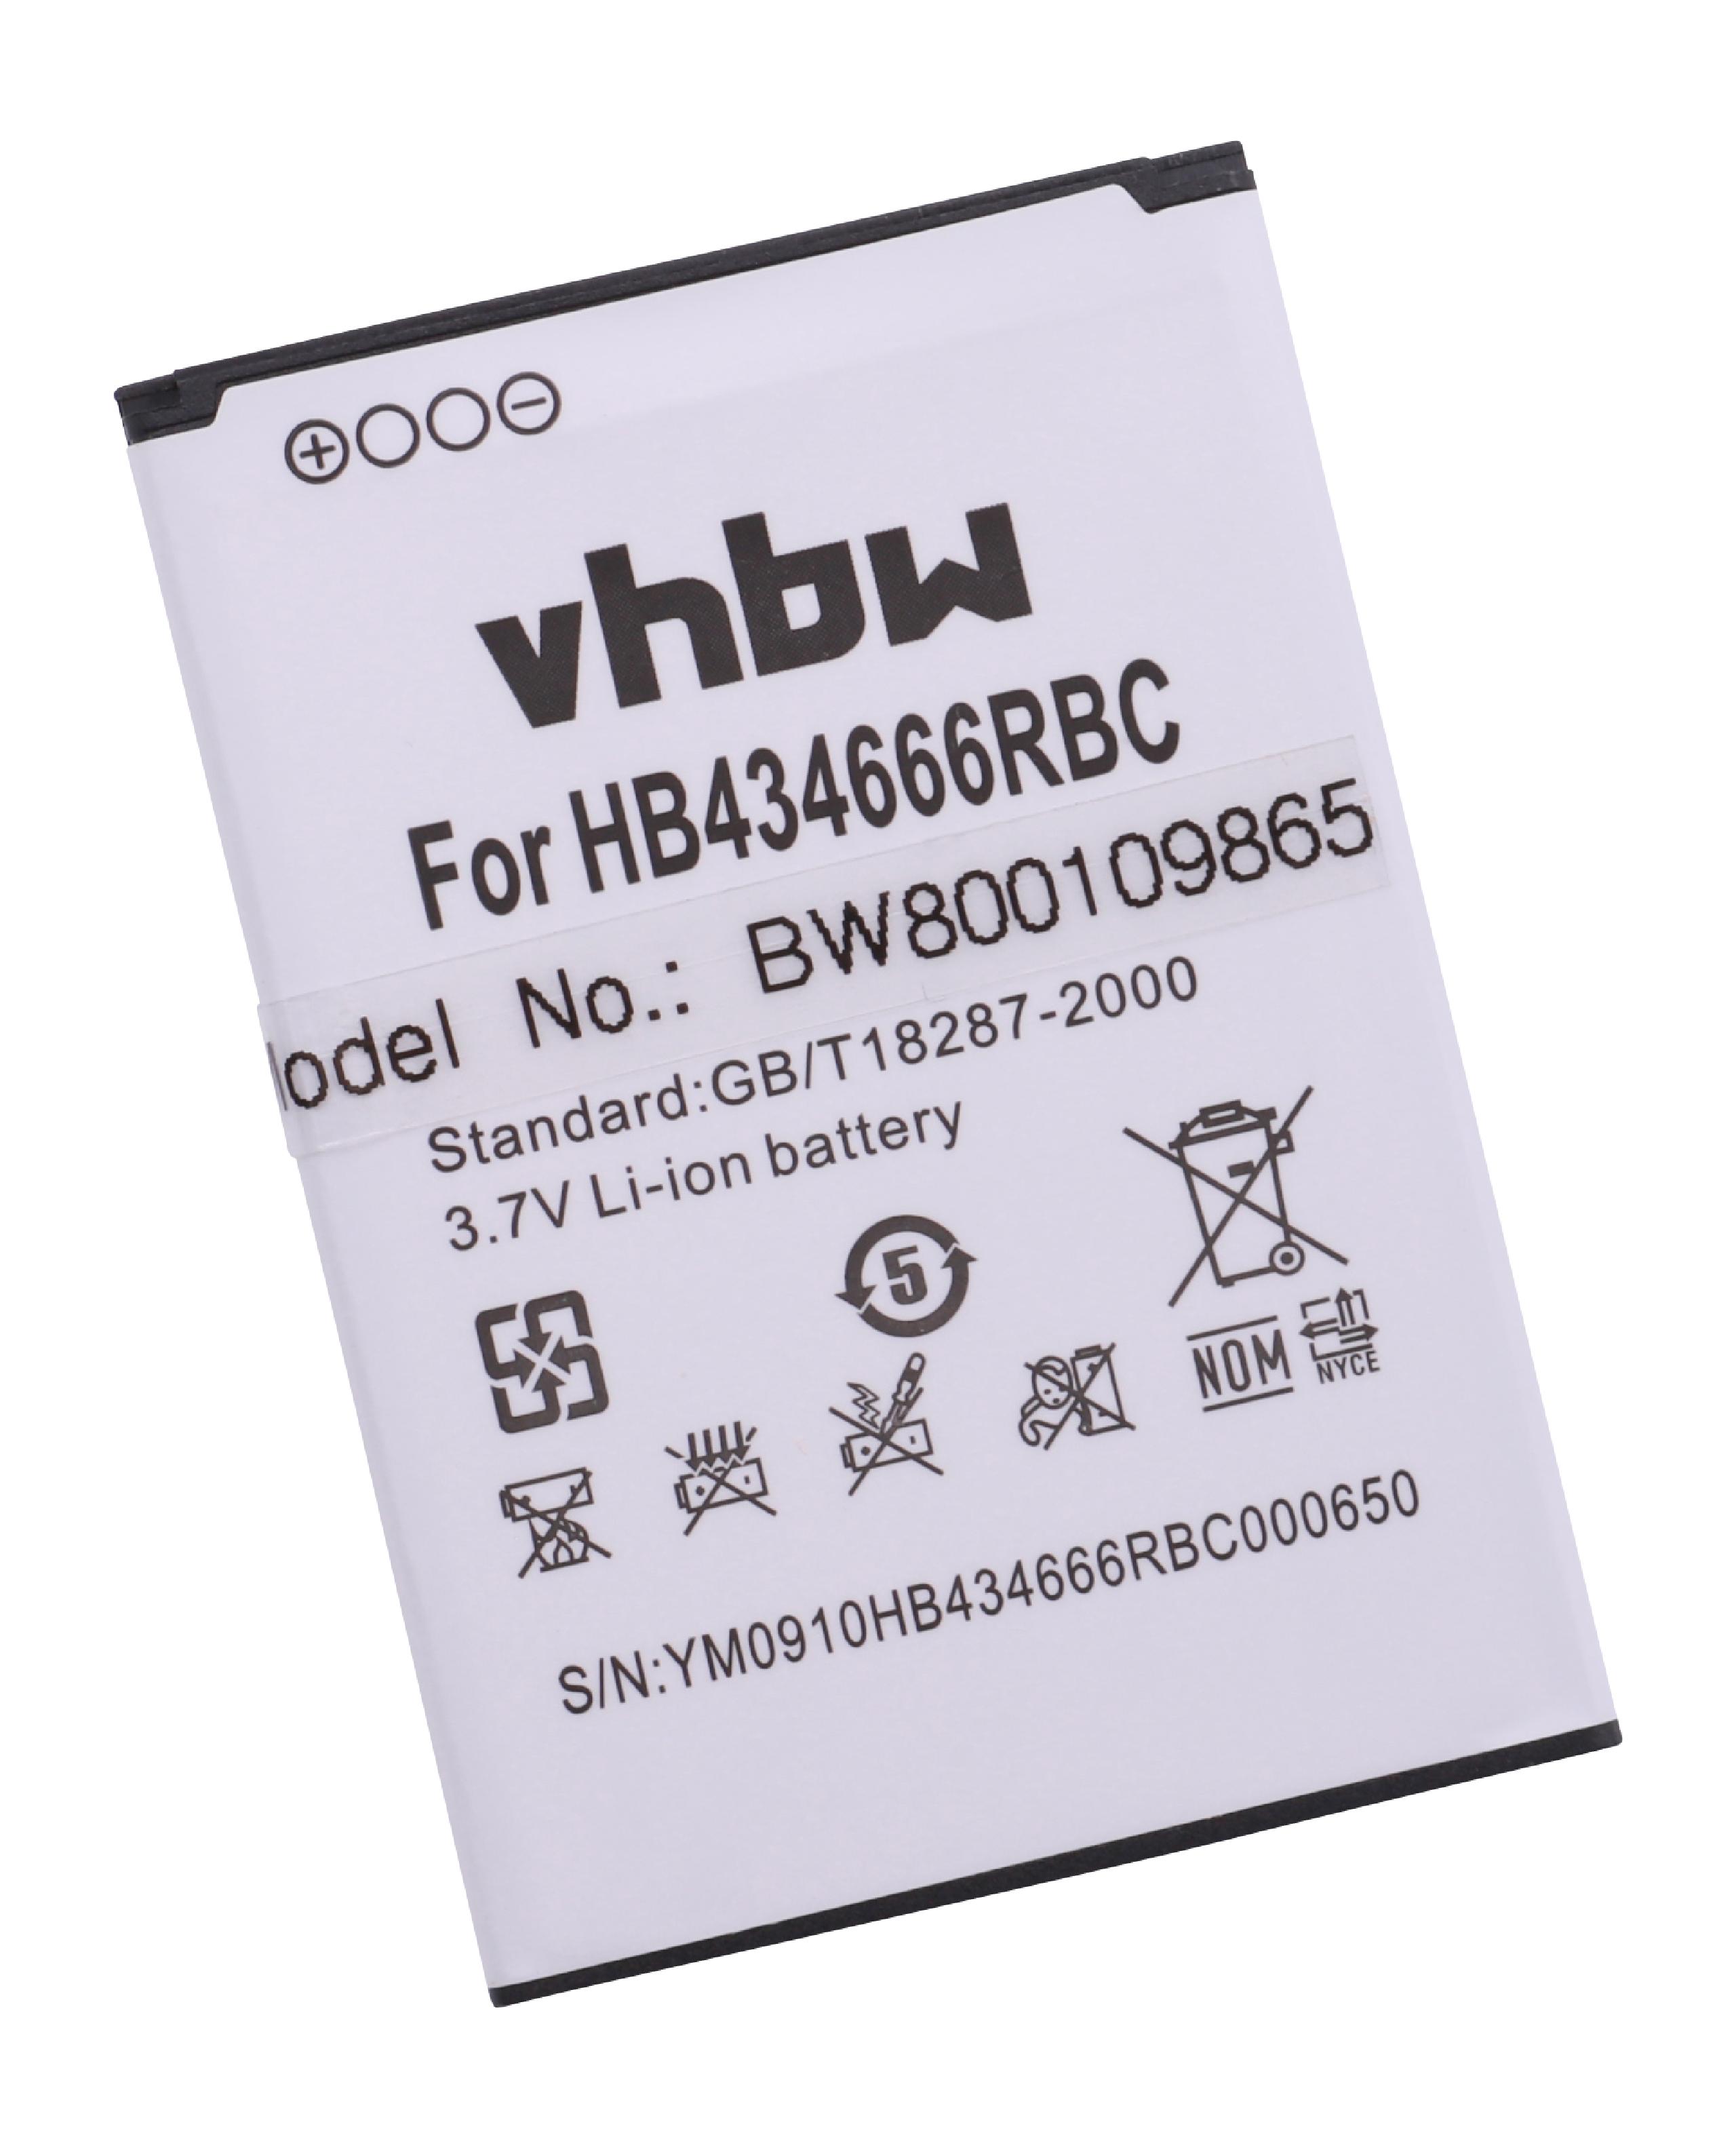 Batterie remplace Huawei HB434666RBC, HB434666RAW pour routeur modem - 1500mAh 3,7V Li-ion